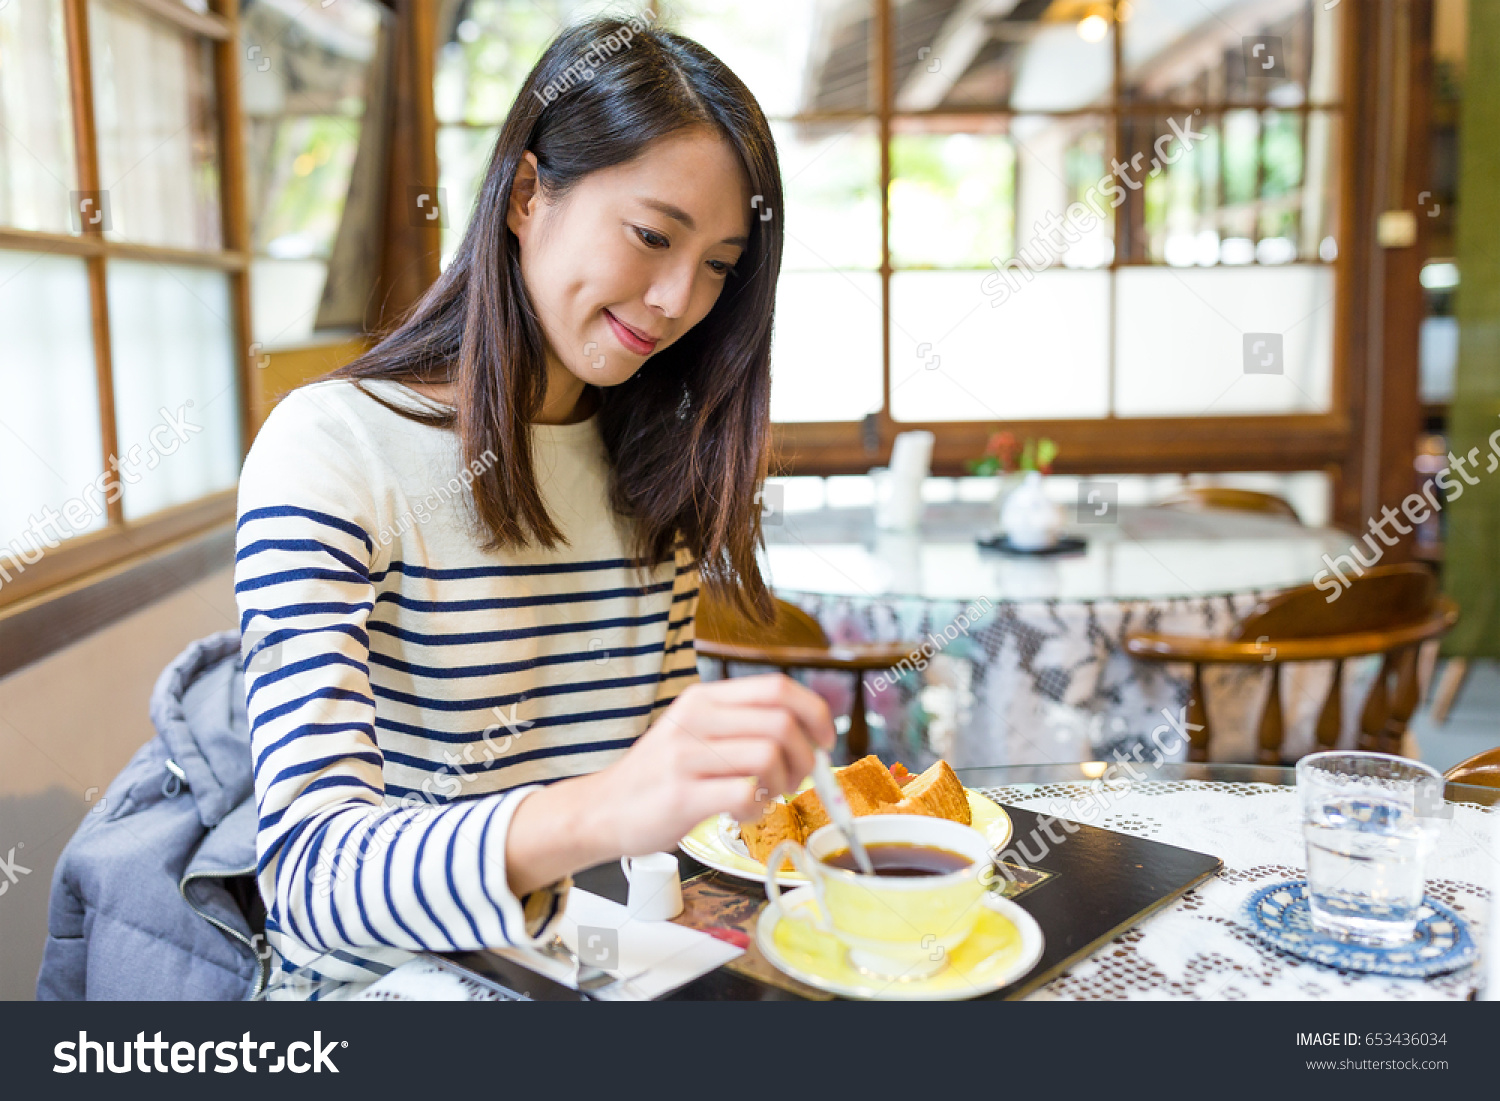 Woman enjoy her breakfast #653436034